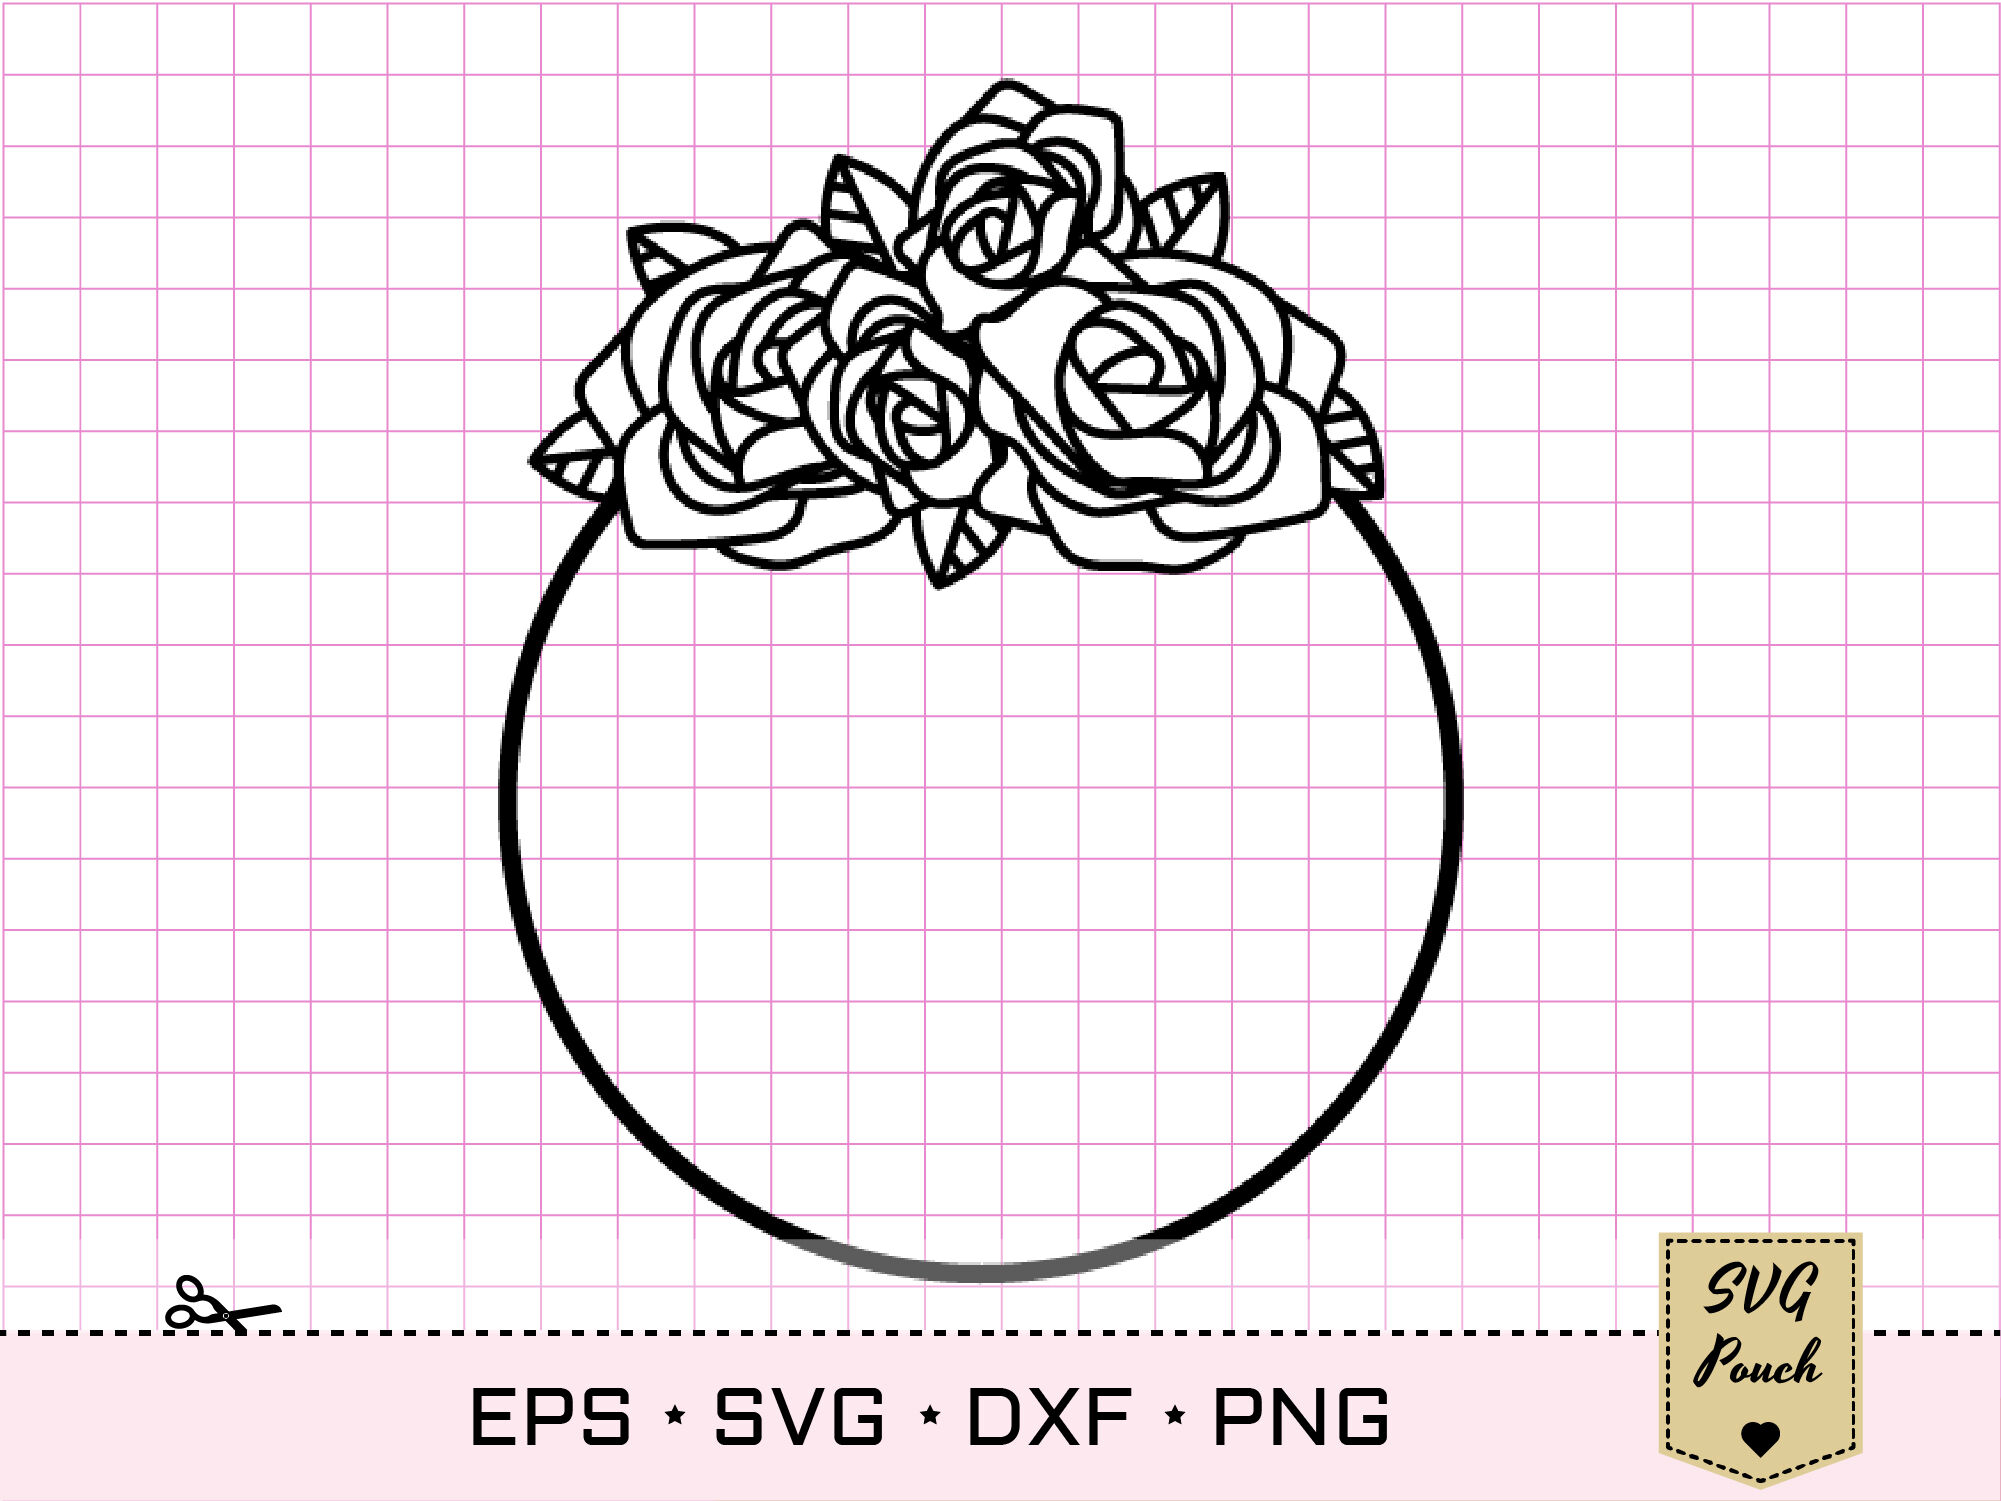 Rose Circle Frame Svg, Rose Svg, Wreath Svg, Flower Svg, Floral